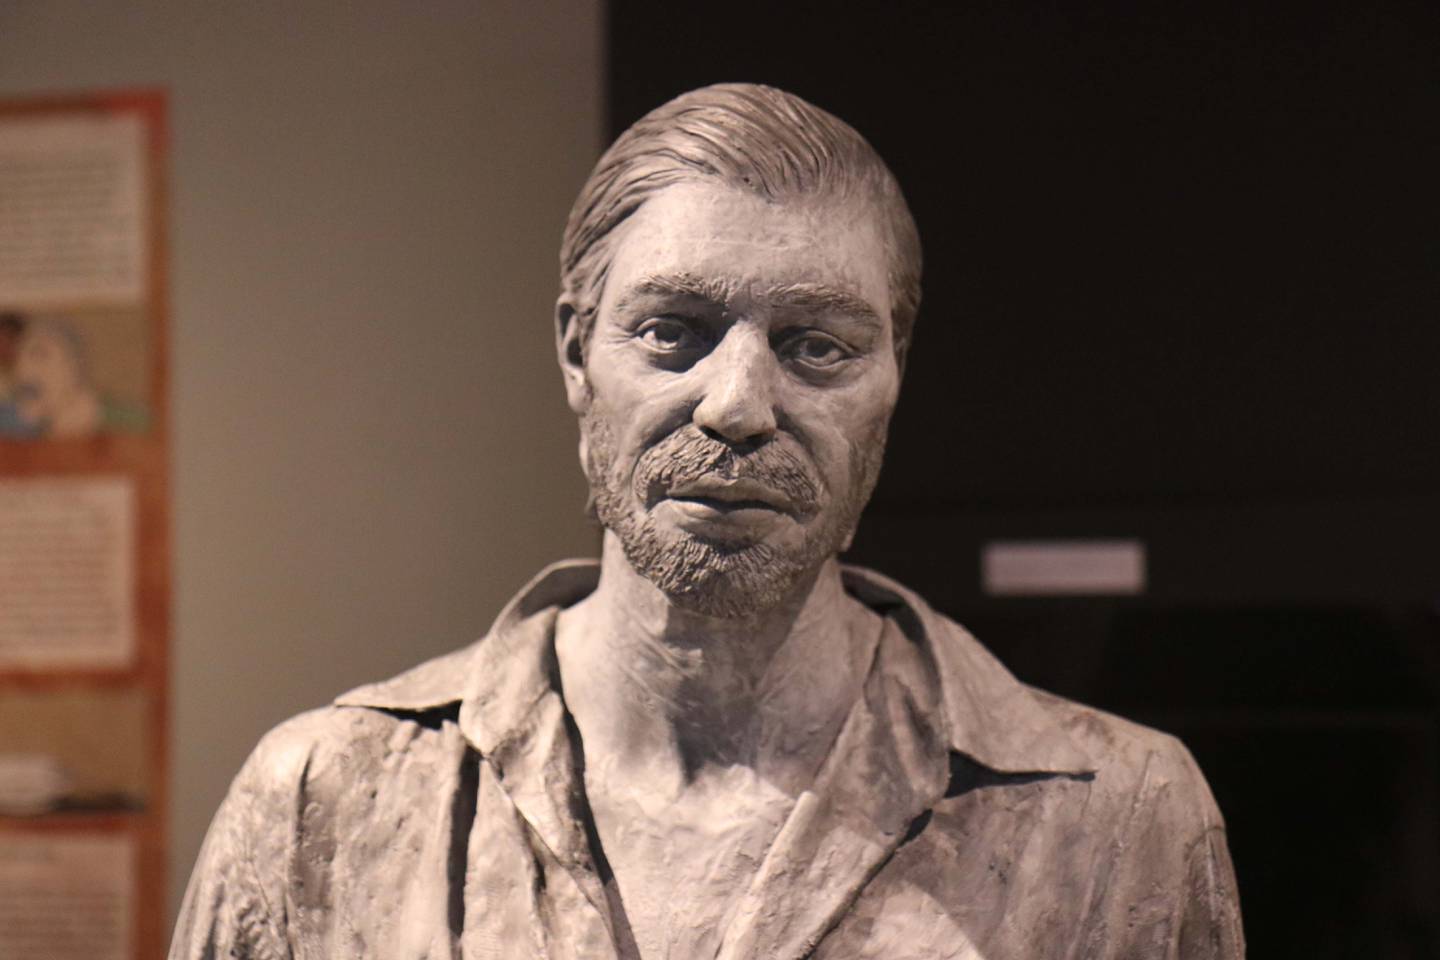 La temática del concurso 'Relatos en fuga' toma como inspiración esta escultura en el Museo Penitenciario.